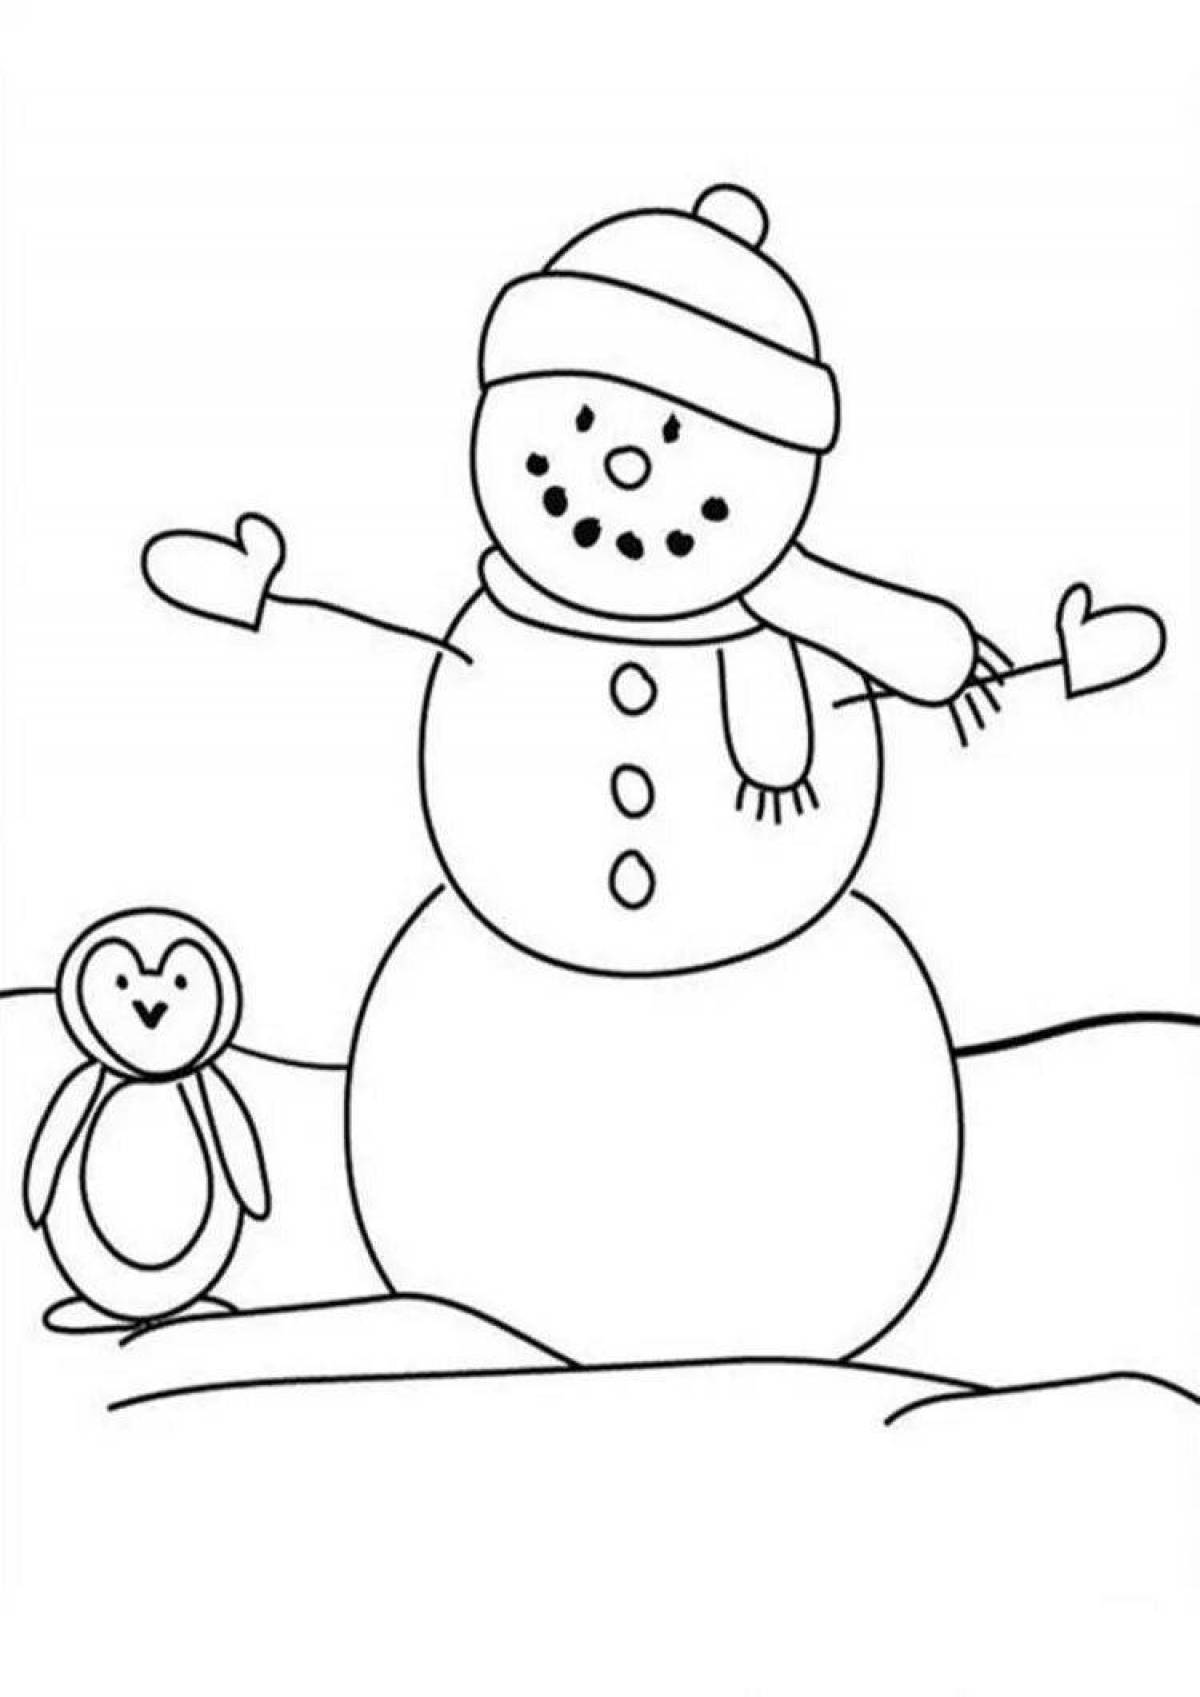 Праздничная раскраска снеговик для детей